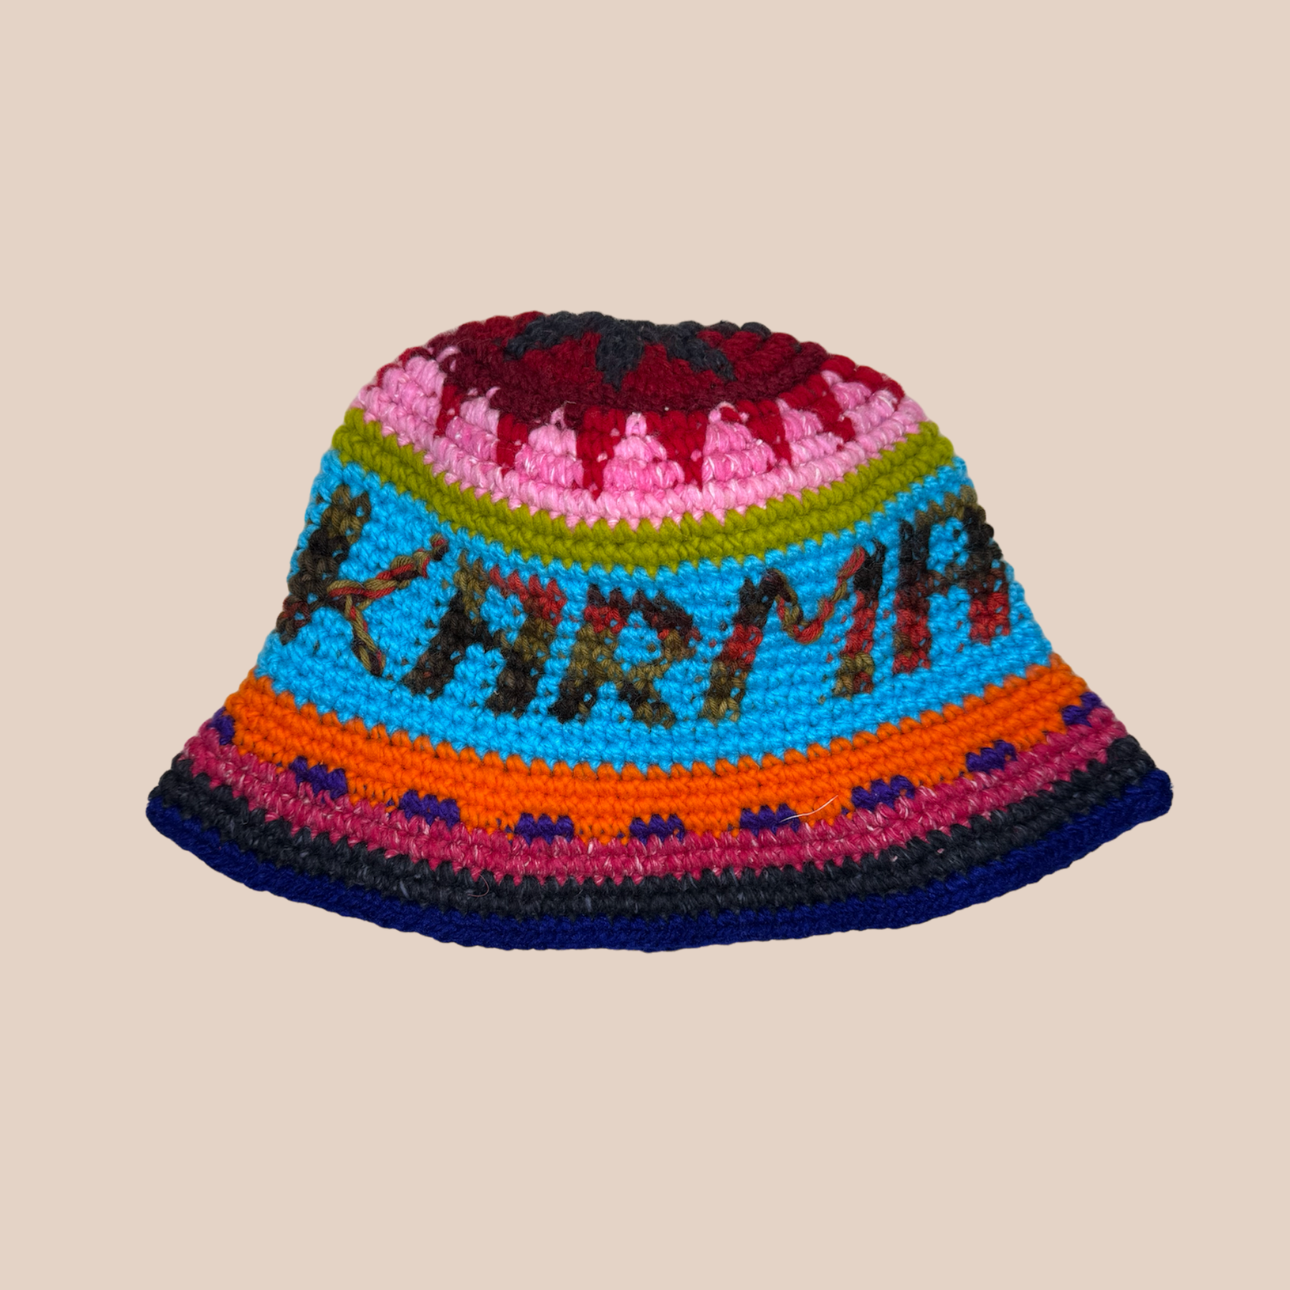 Image du bucket hat inscription GOOD et KARMA de Maison Badigo, bucket hat (bob) multicolore unique et tendance